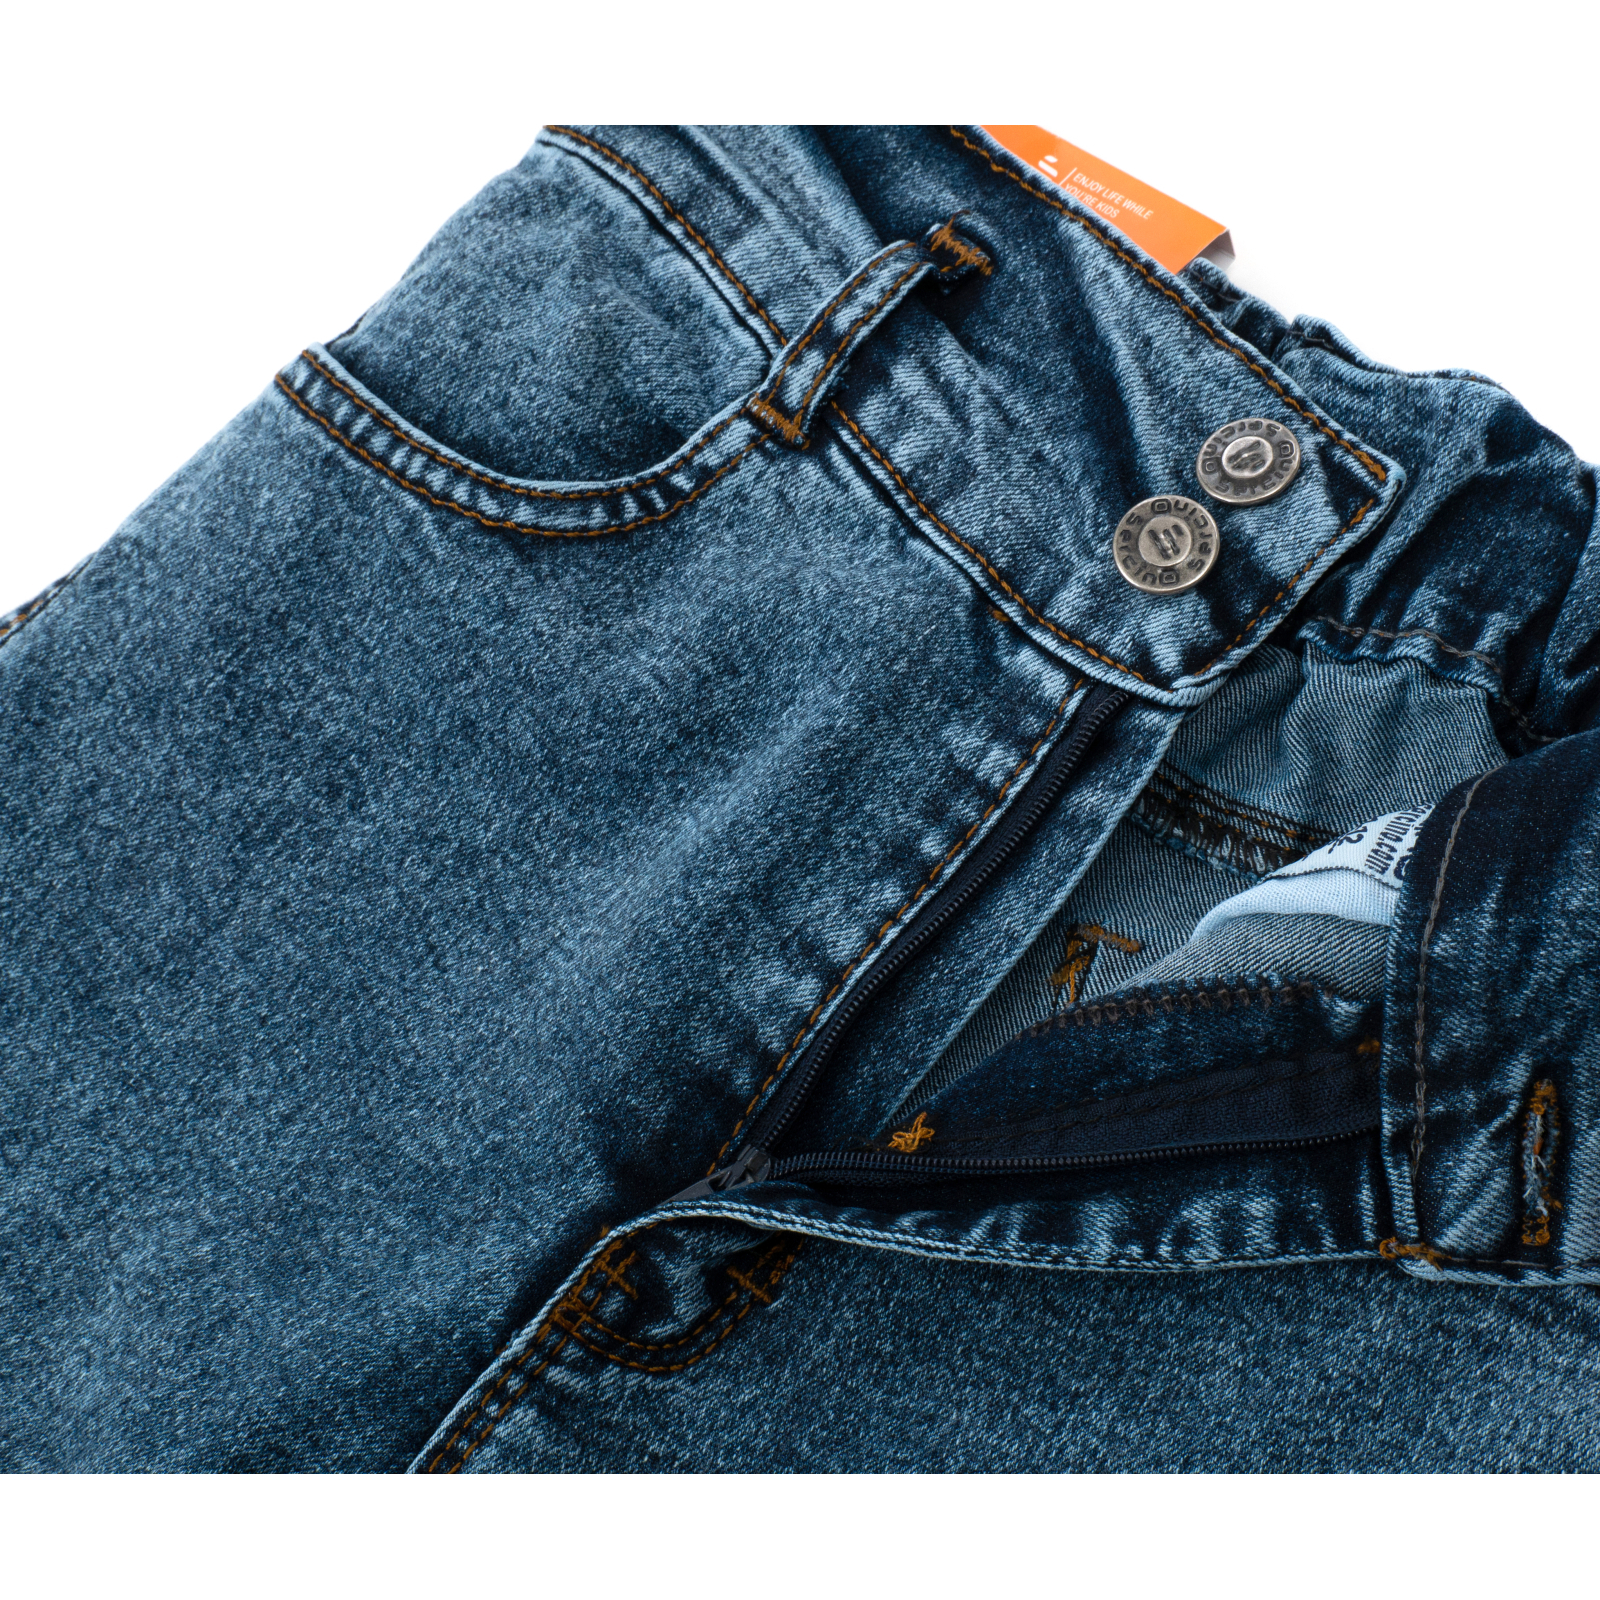 Джинсы Sercino с карманами (59654-152G-blue) изображение 6